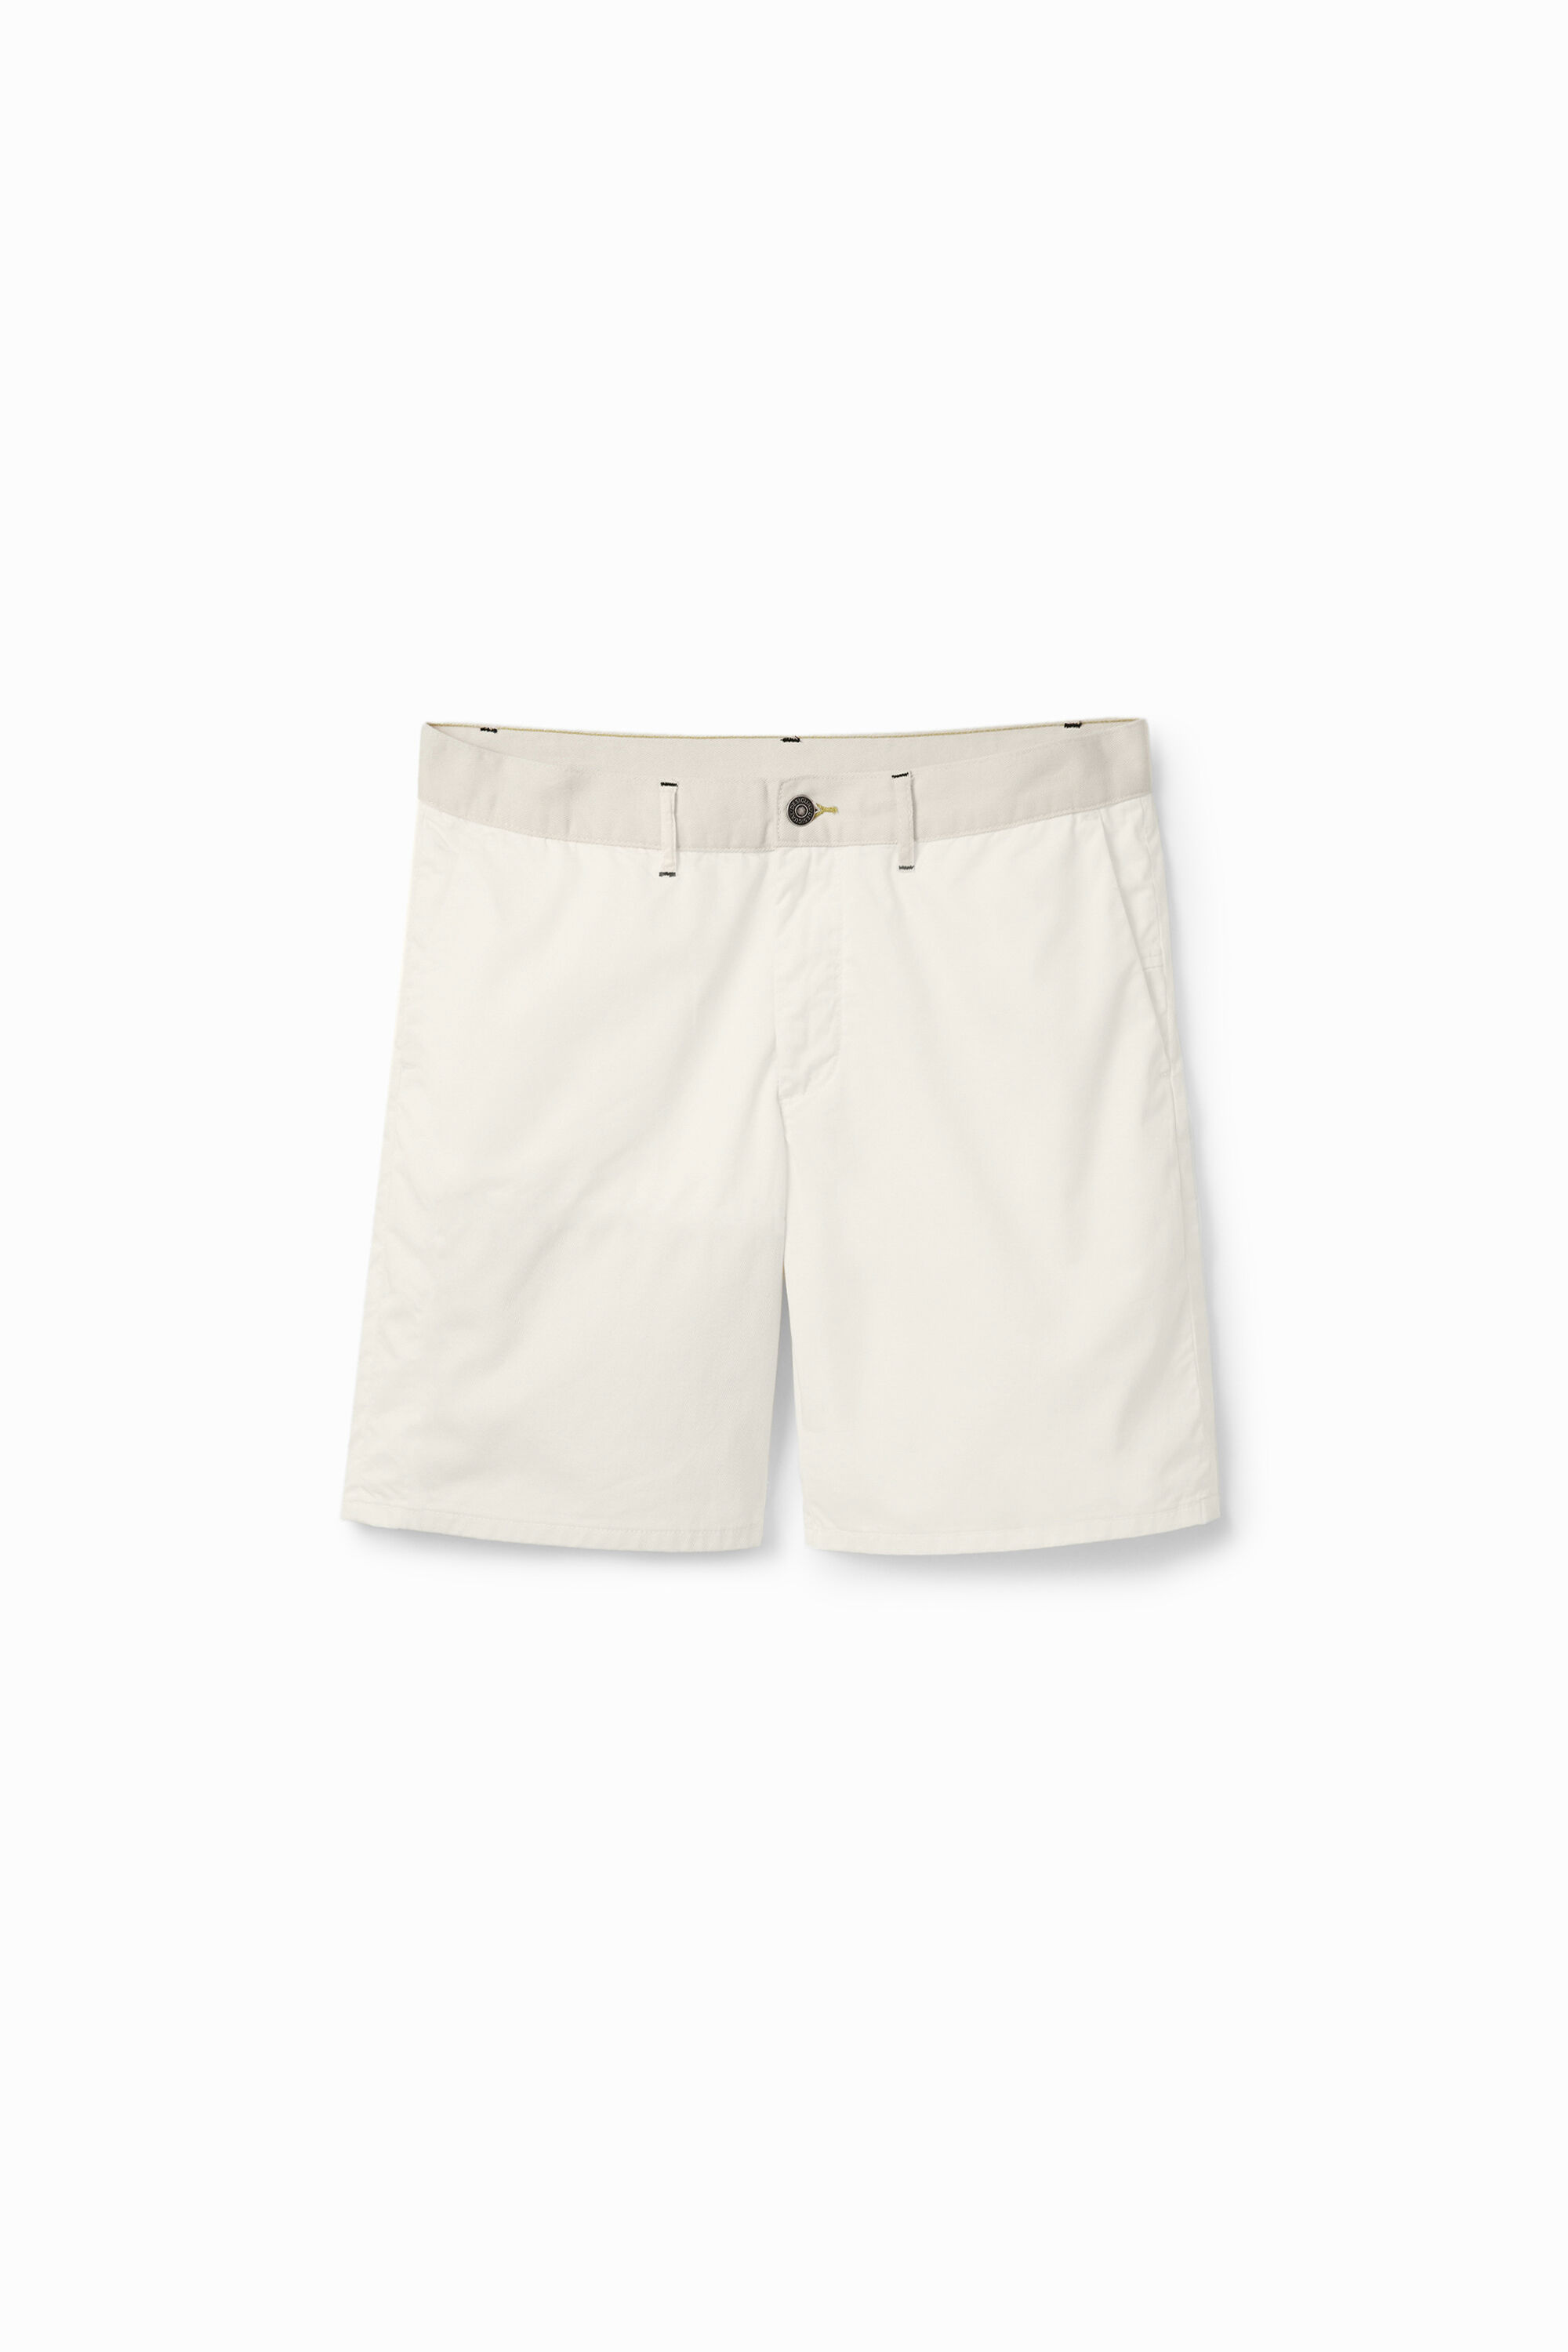 Hybrid shorts - WHITE - 36